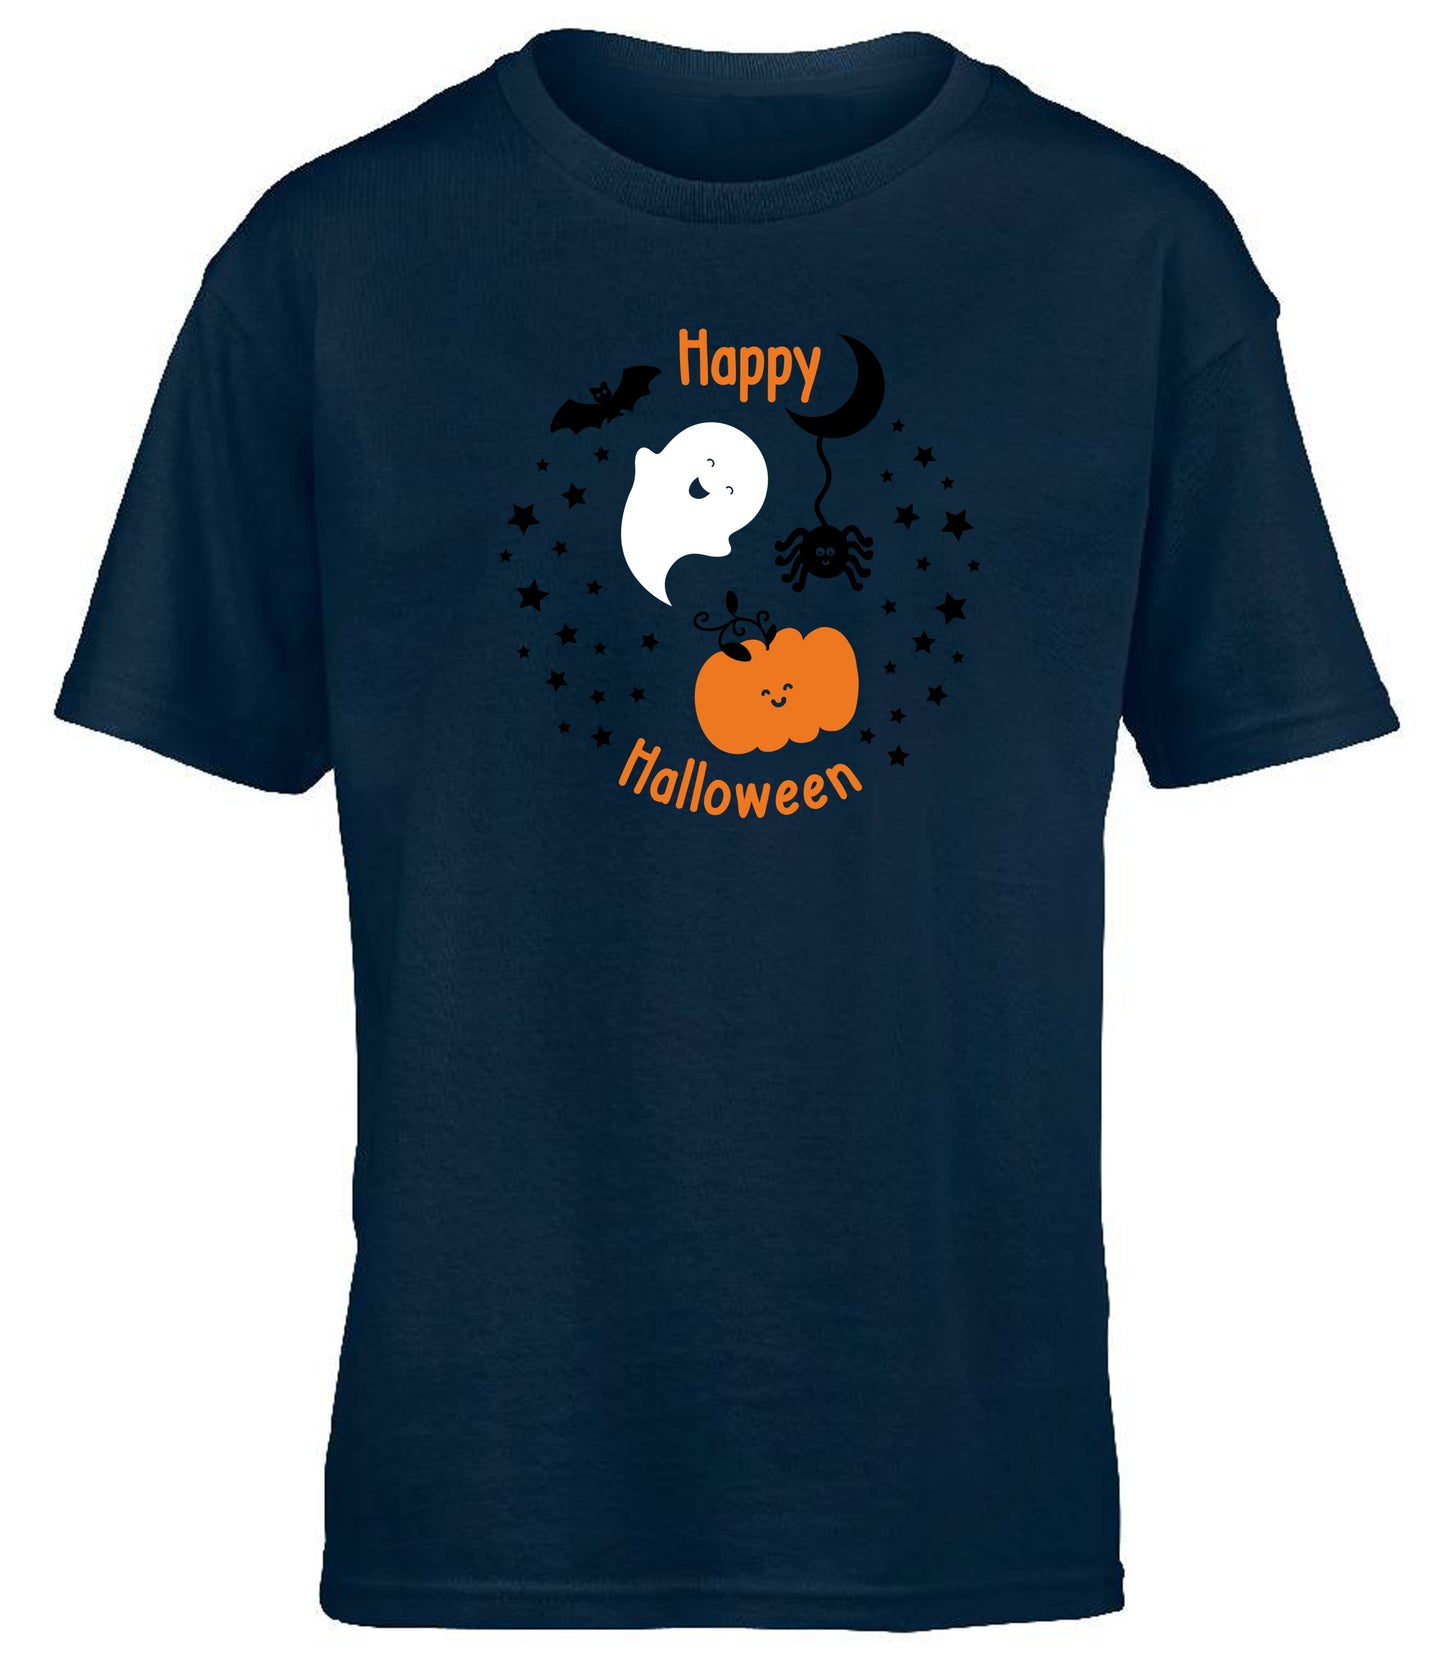 Happy Halloween children's T-shirt